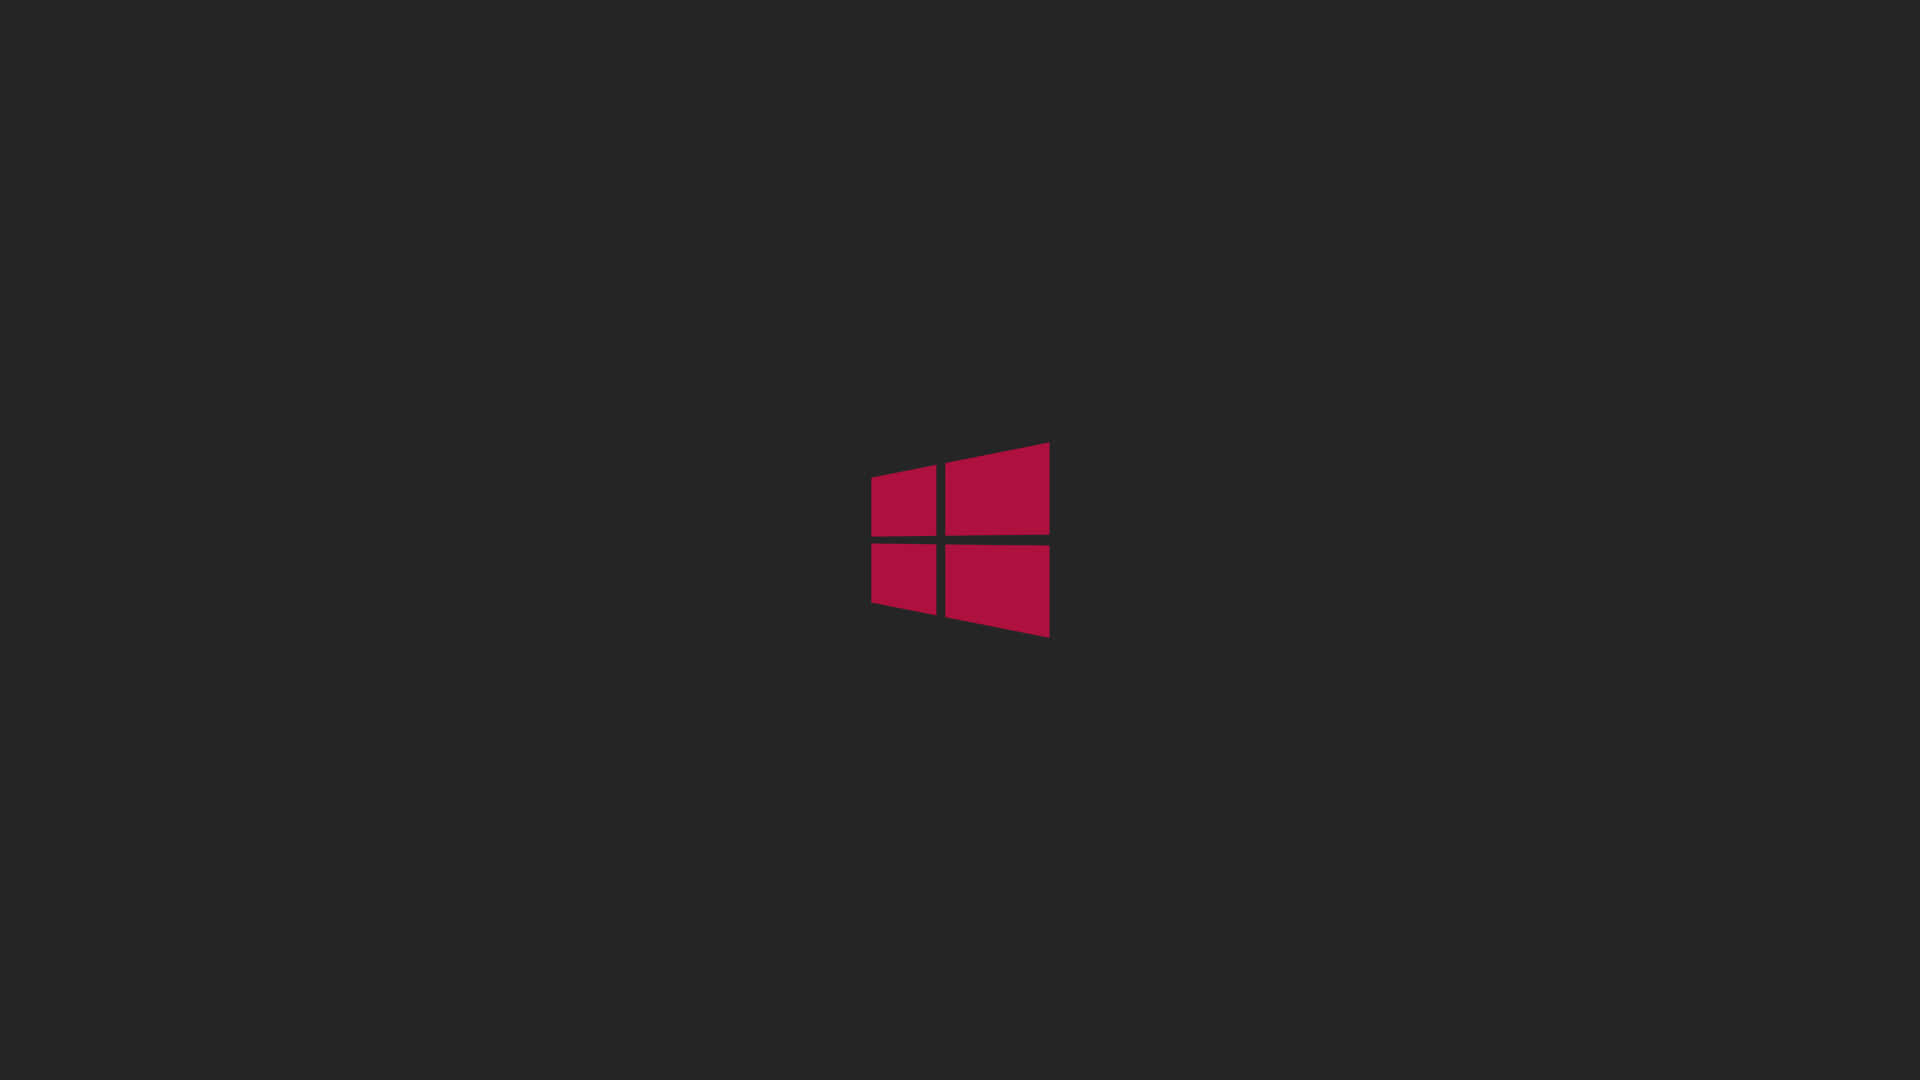 Windows8 1920 X 1080 Bakgrund